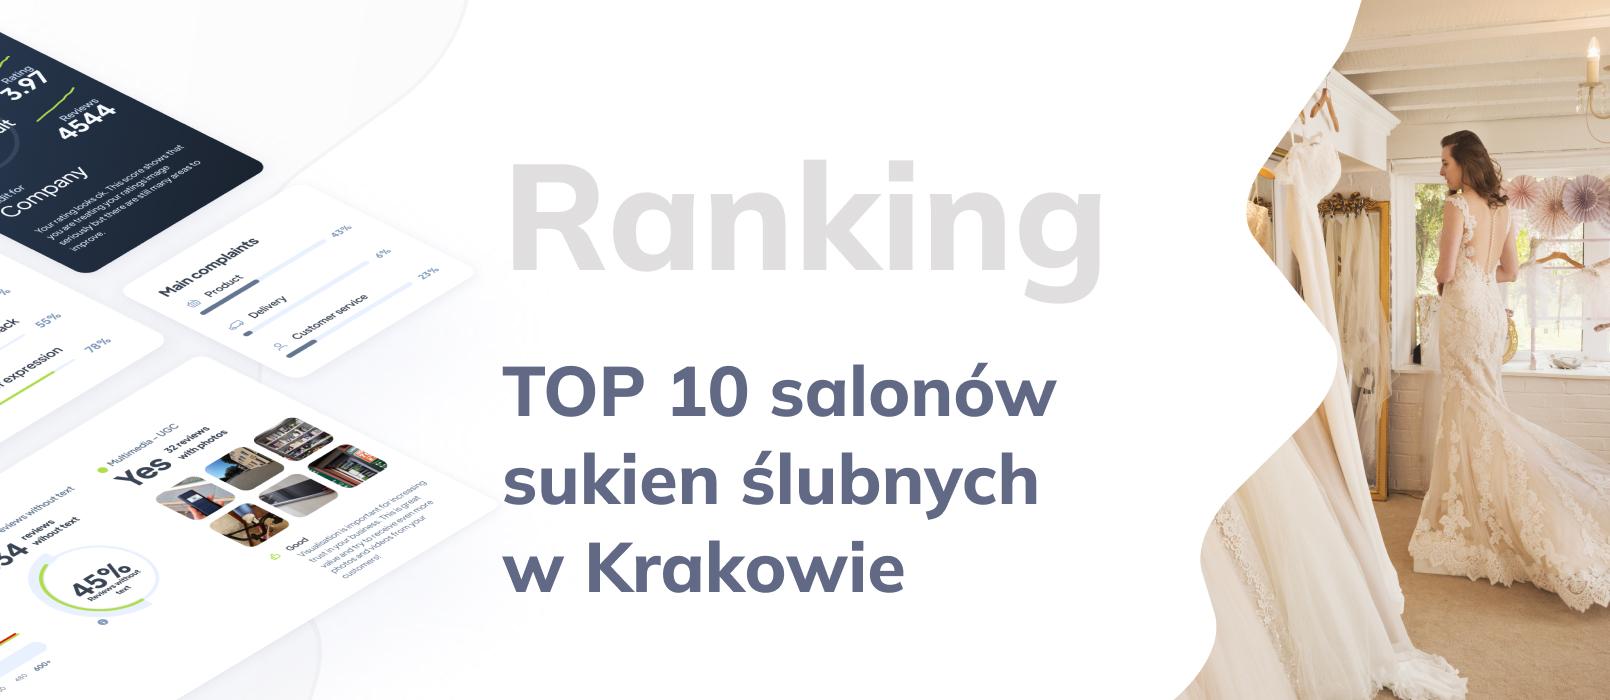 TOP 10 najlepszych salonów sukni ślubnych w Krakowie - ranking na podstawie opinii Google